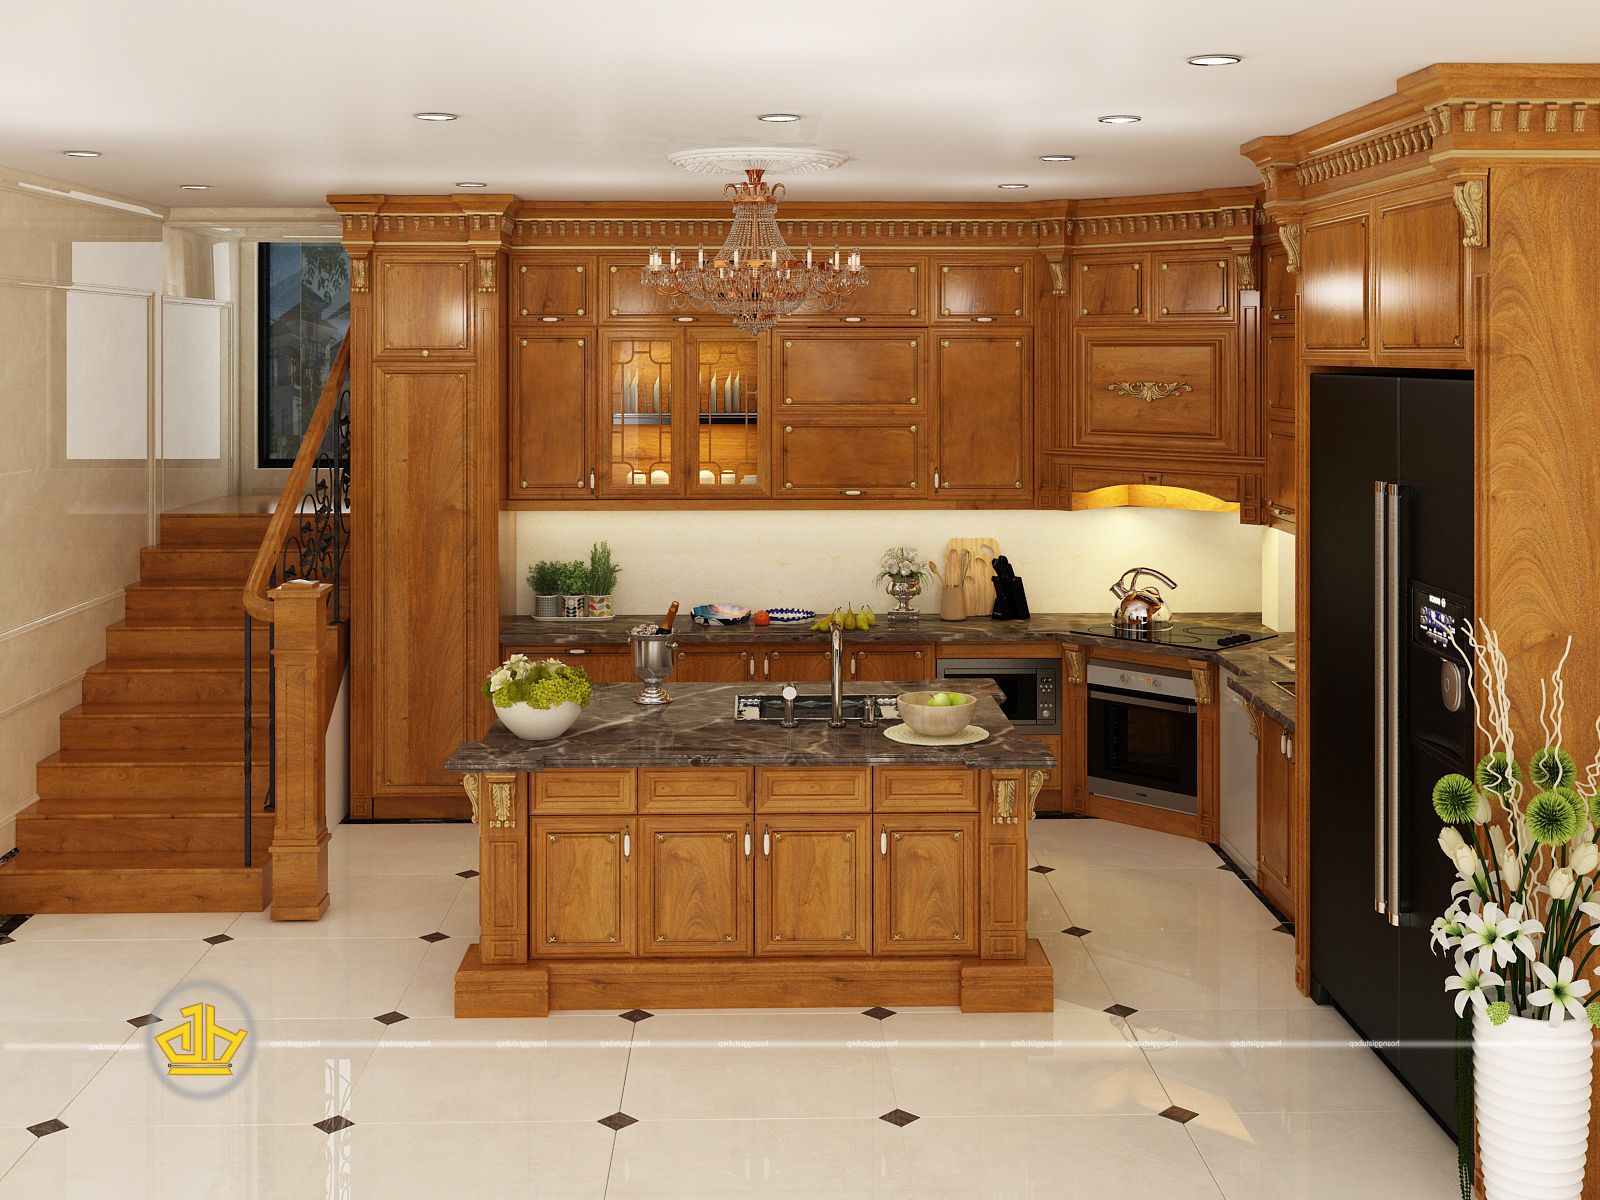 Tủ bếp tân cổ điển là sự hòa quyện giữa phong cách cổ điển và hiện đại, mang lại sự tinh tế và sang trọng cho không gian bếp của bạn. Hãy xem hình ảnh và cảm nhận sự độc đáo của thiết kế này nhé!